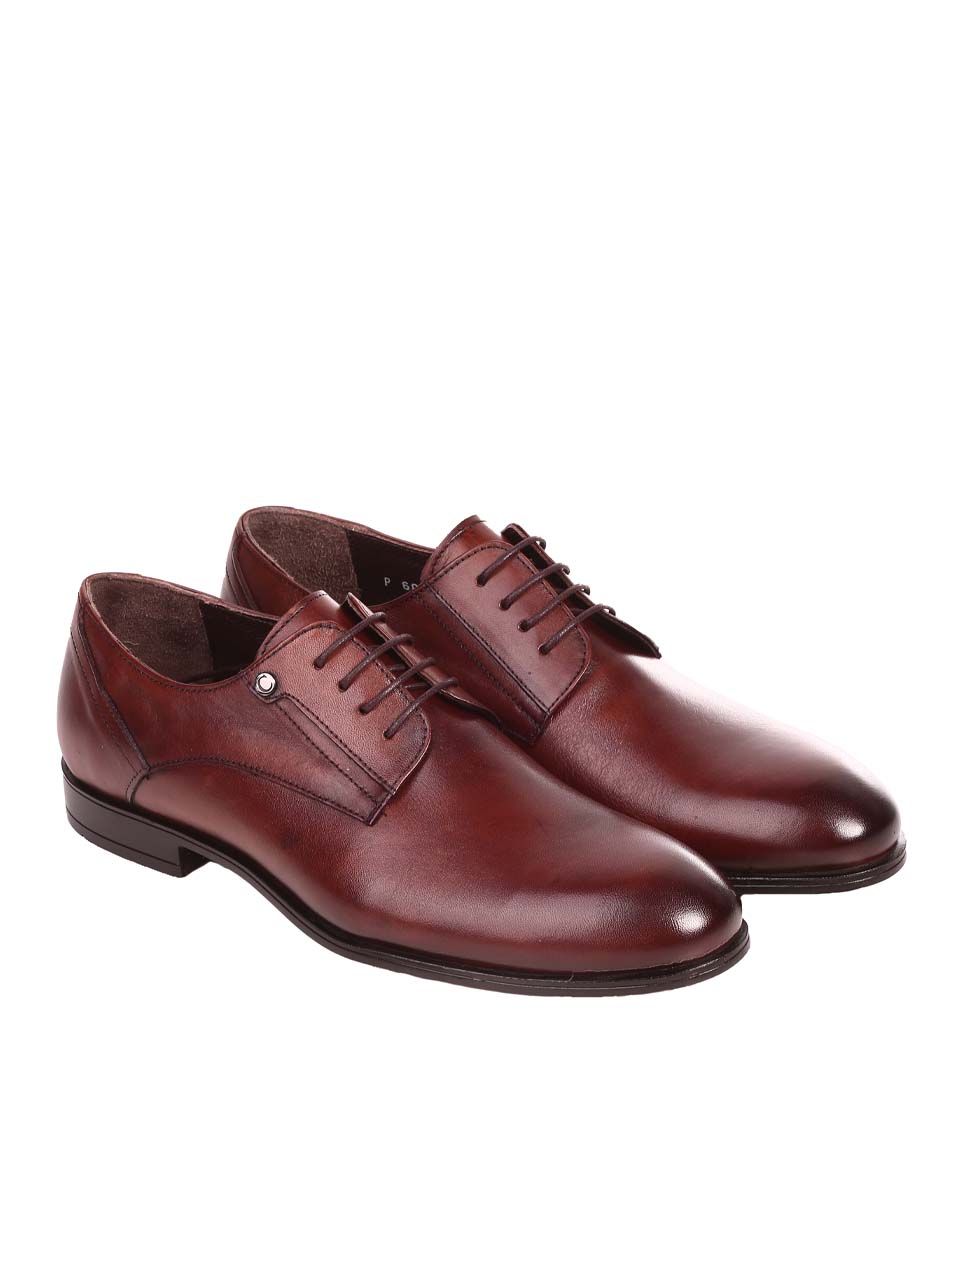 Елегантни мъжки обувки от естествена кожа 7AT-24369 brown